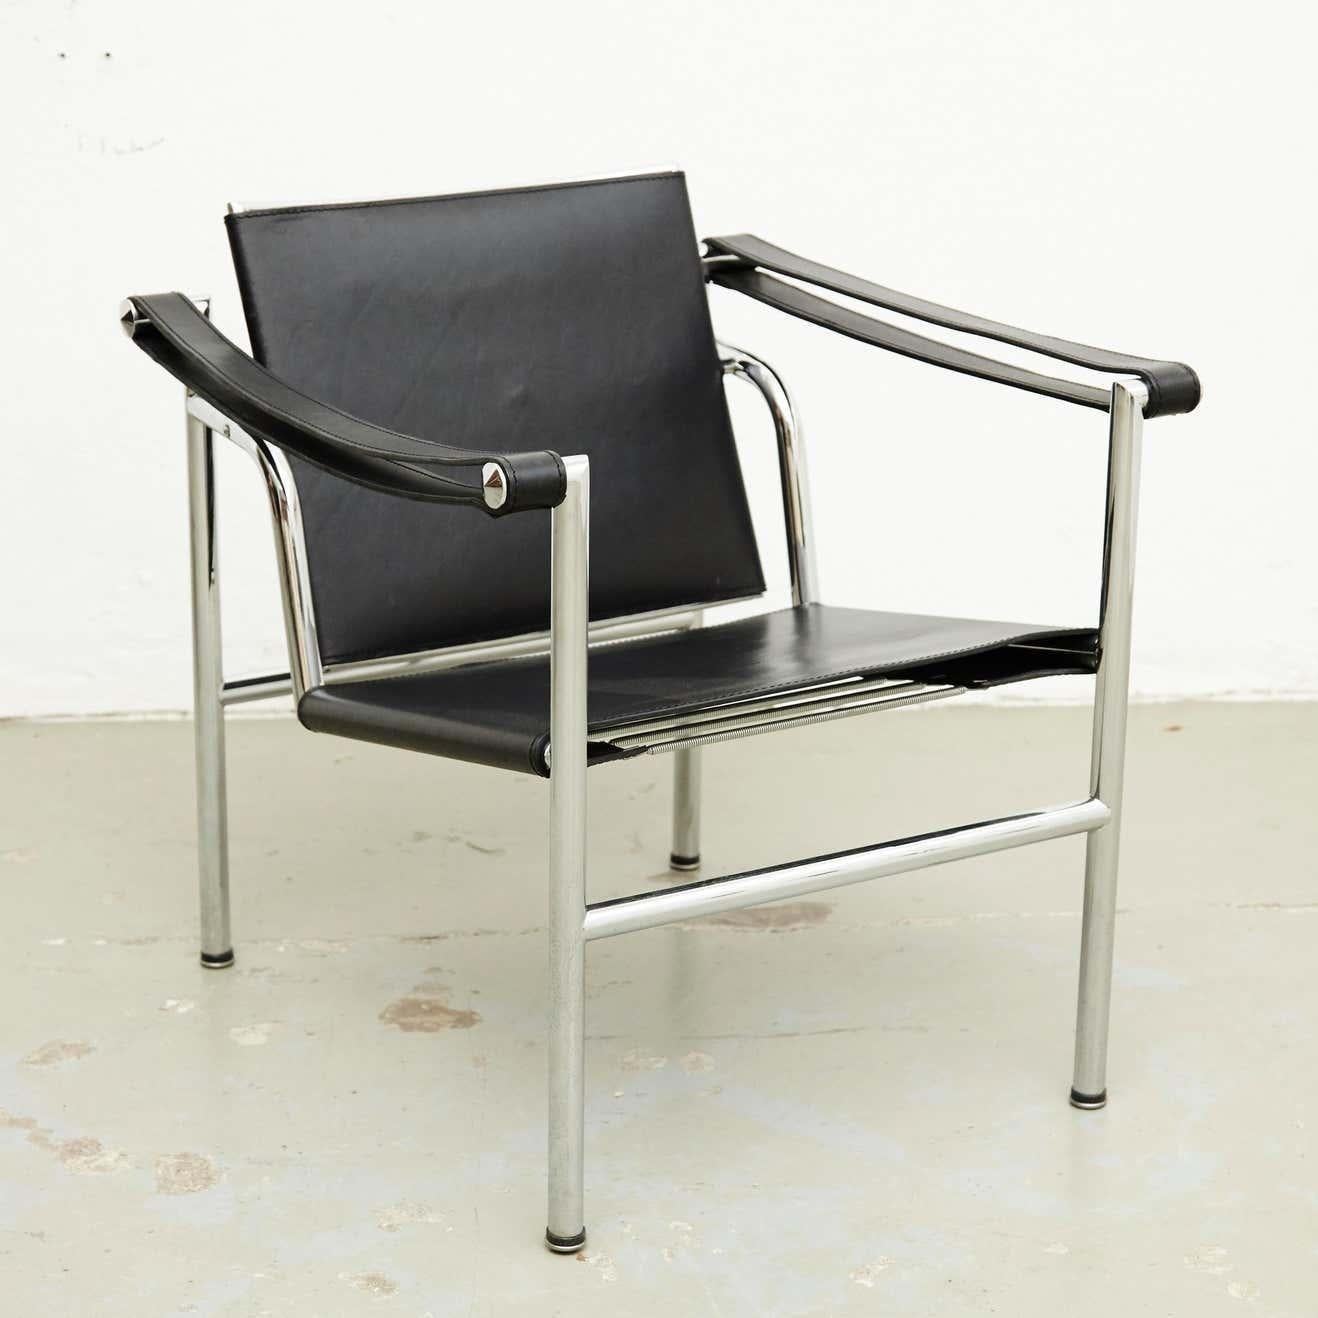 Le Corbusier, Pierre Jeanneret et Charlotte Perriand Chaise longue en cuir noir LC1.
acier chromé.
Fabricant inconnu.
Fabriqué à la fin du 20e siècle.

En bon état d'origine, avec de légères usures dues à l'âge et à l'utilisation, préservant